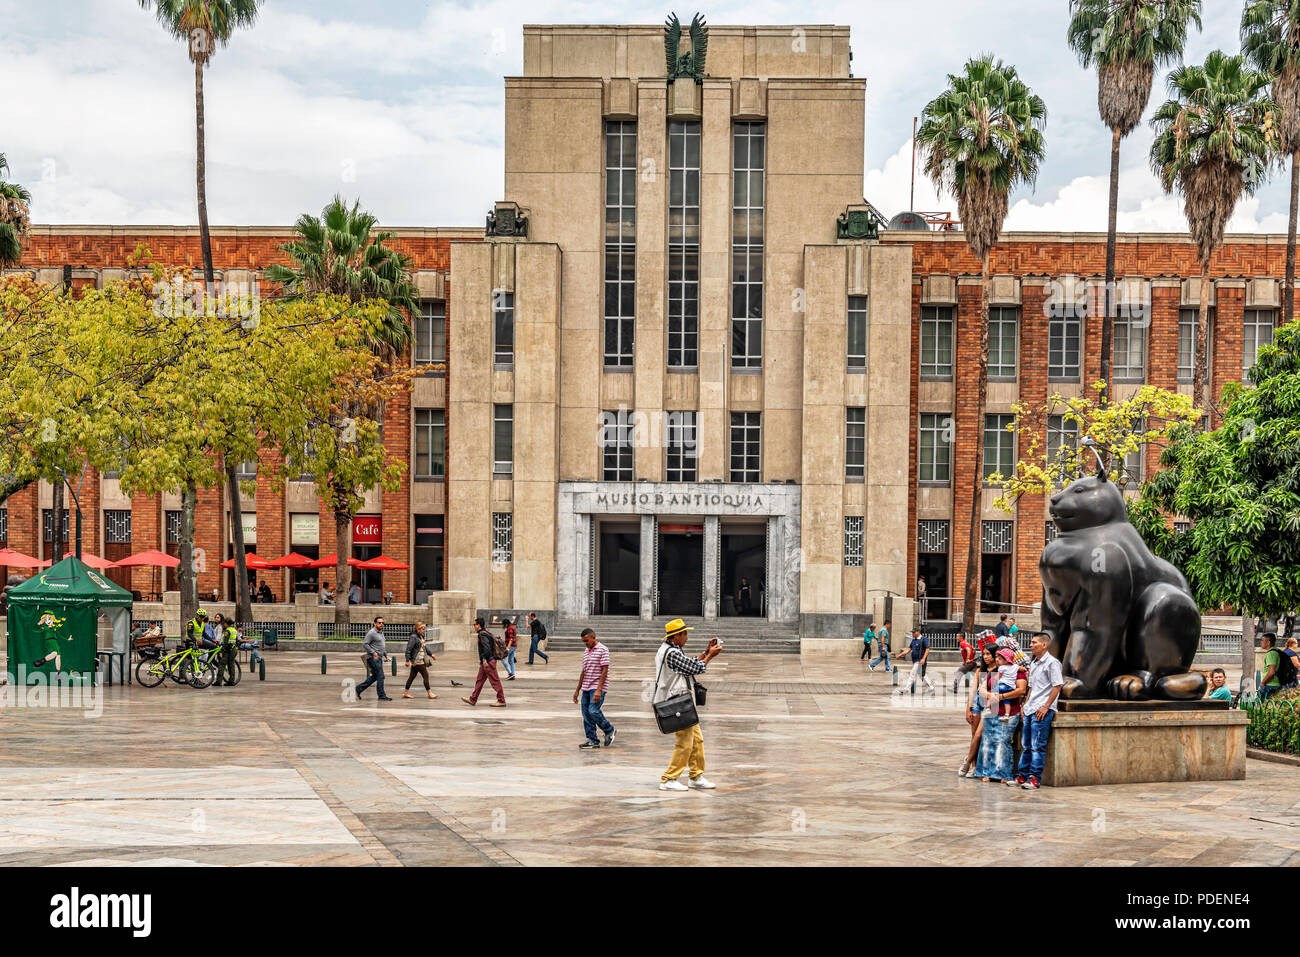 Medellin, Colombie, le 24 mars 2018 : les touristes à prendre photo sculpture de Botero Botero sculptures situé au square à Medellin, Colombie. Entrée de Banque D'Images